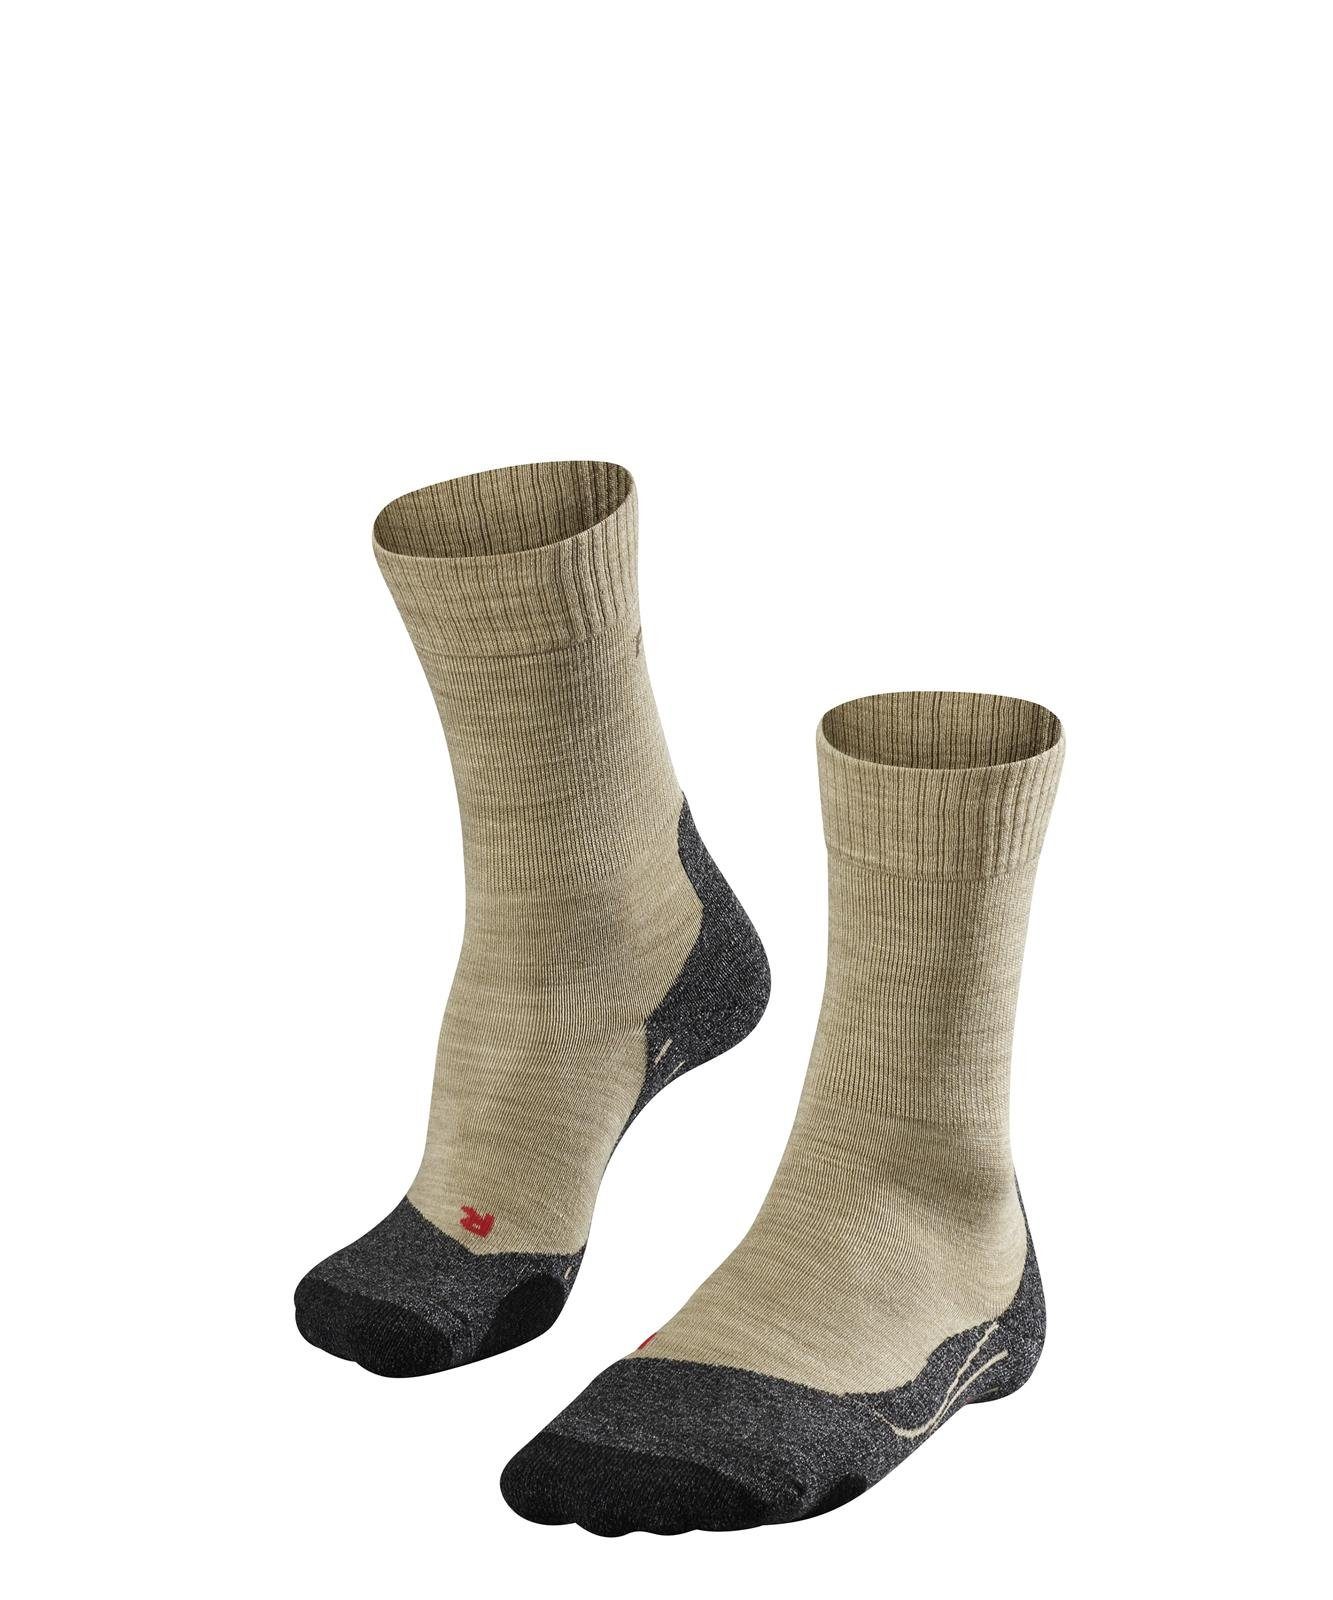 Socken Trekking FALKE - Polsterung Sand Sportsocken Herren Socken (4100) TK2,